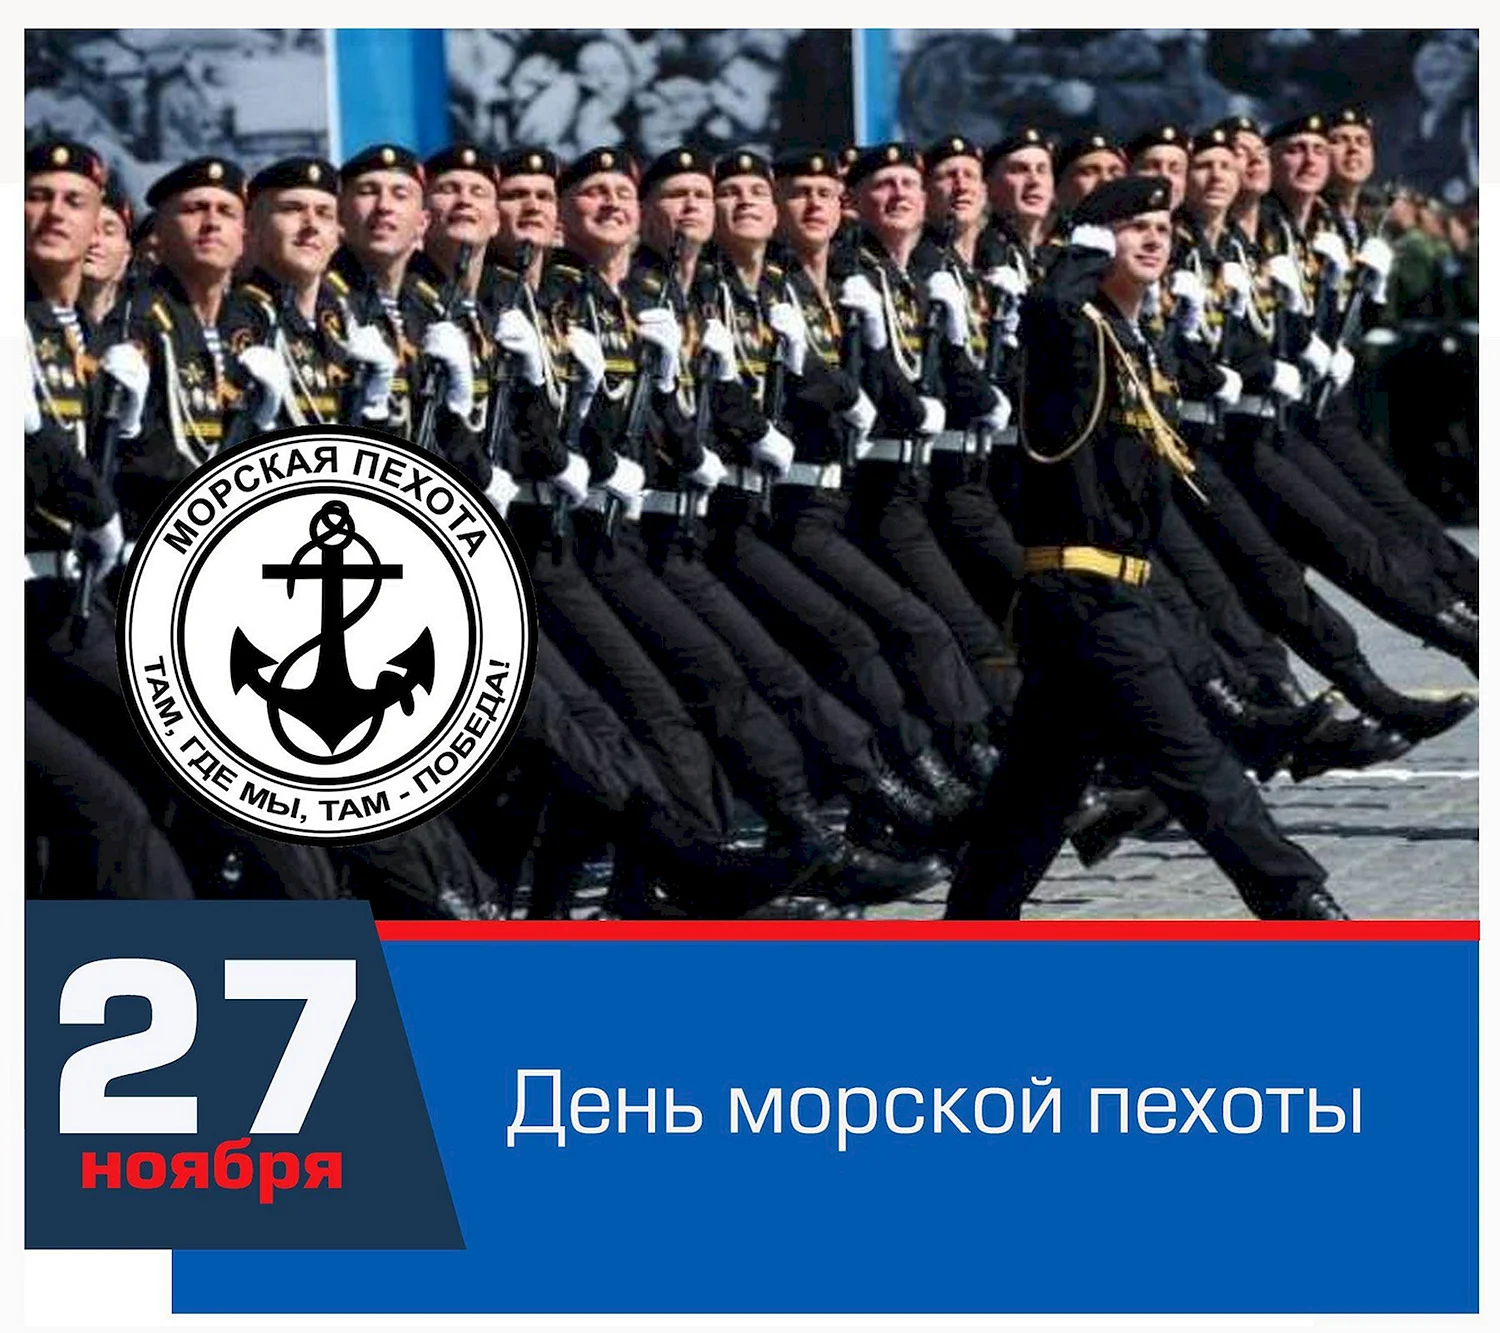 Праздник день морской пехоты в России